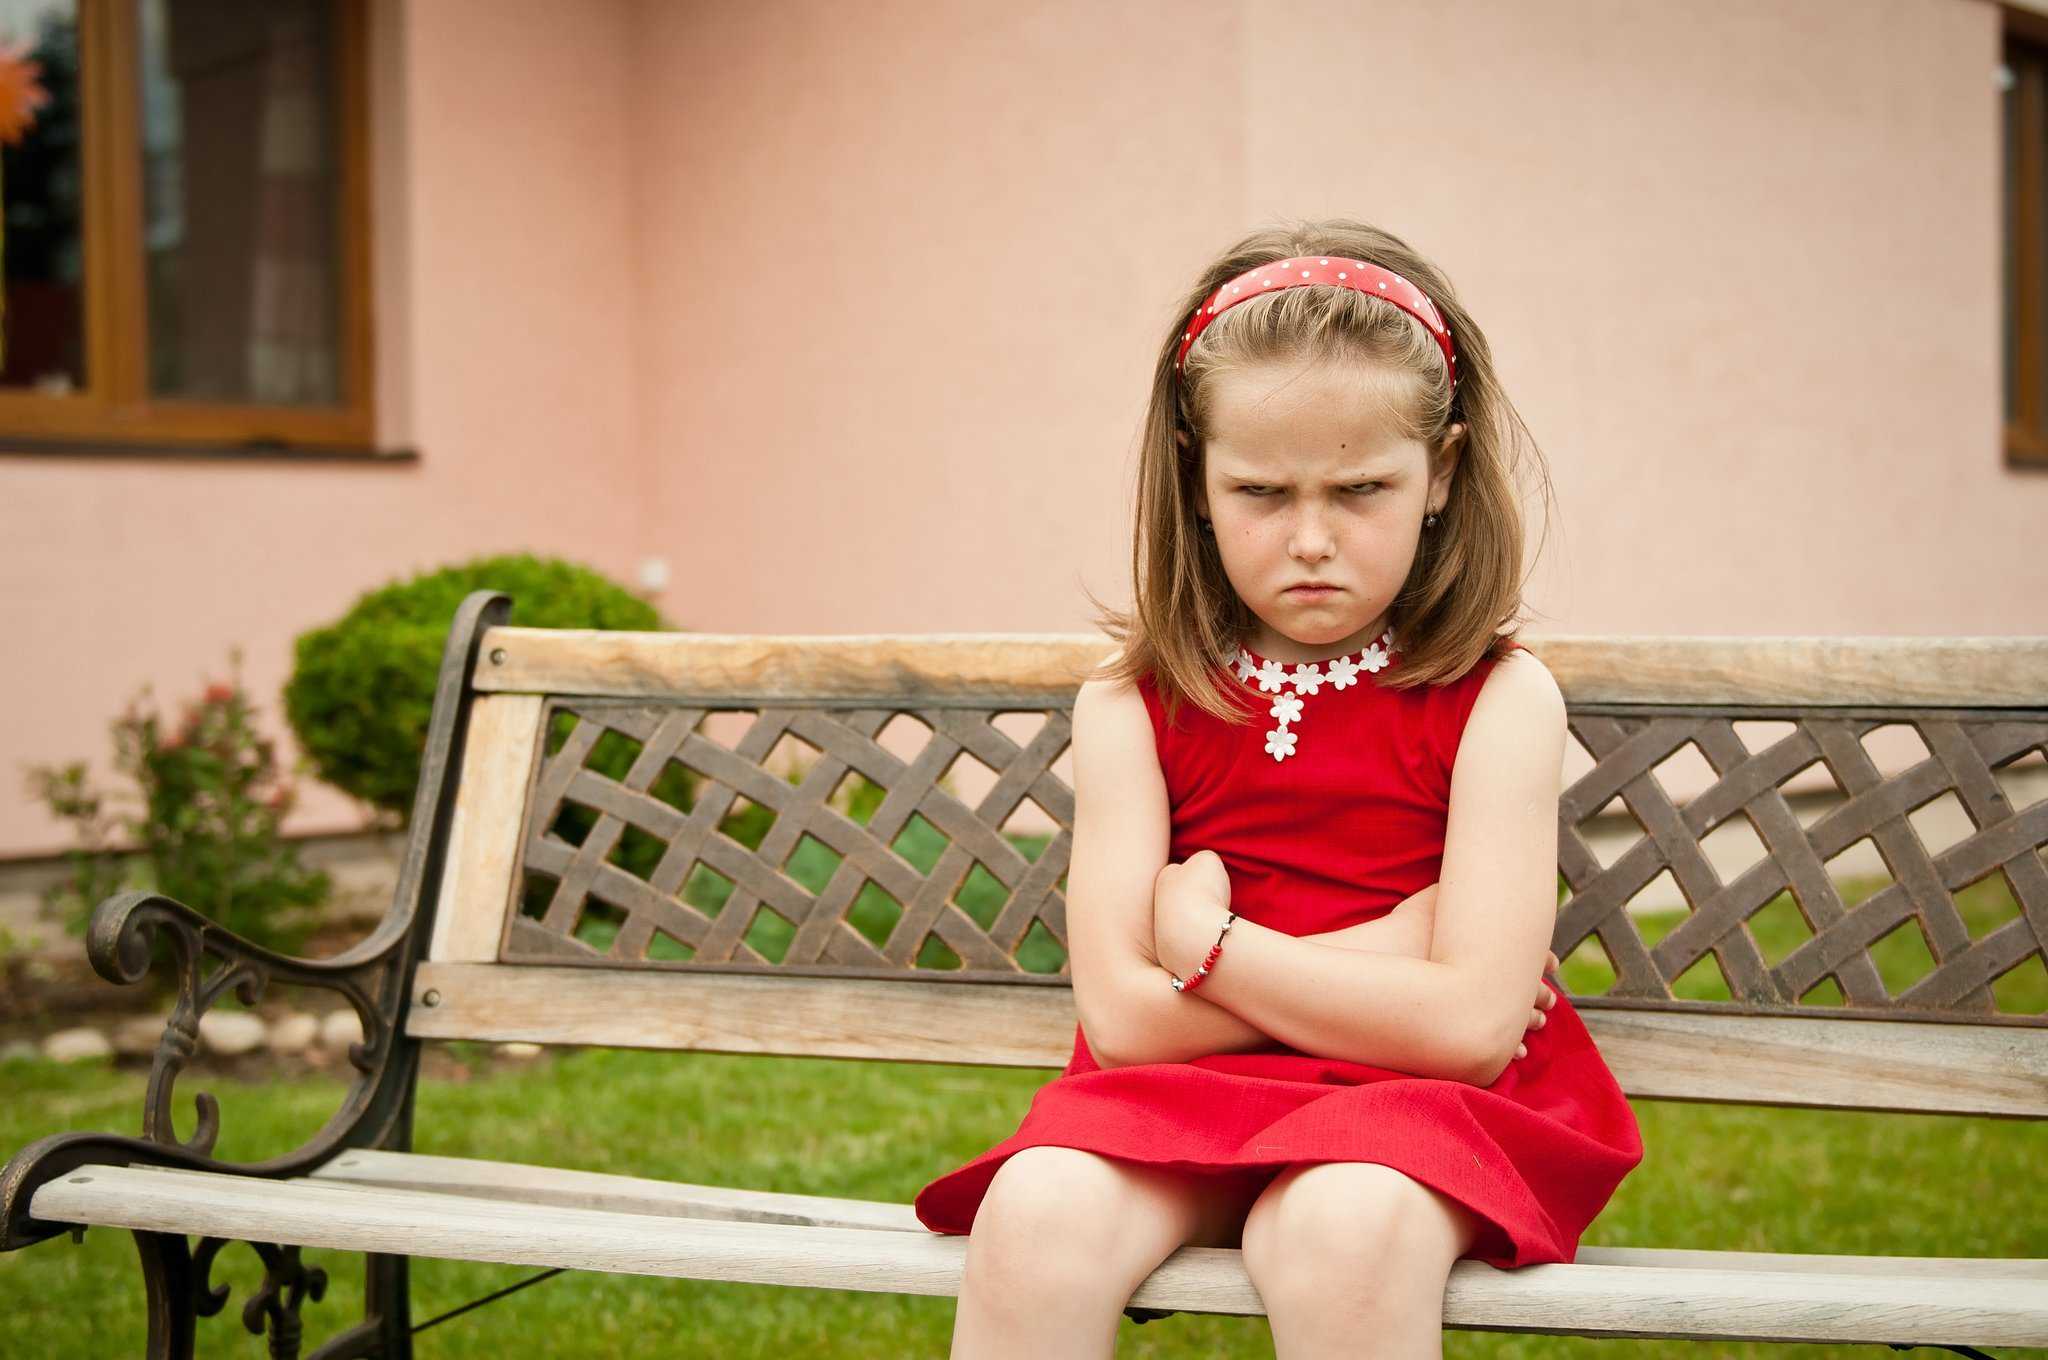 Детские обиды: как помочь ребёнку преодолеть обидчивость